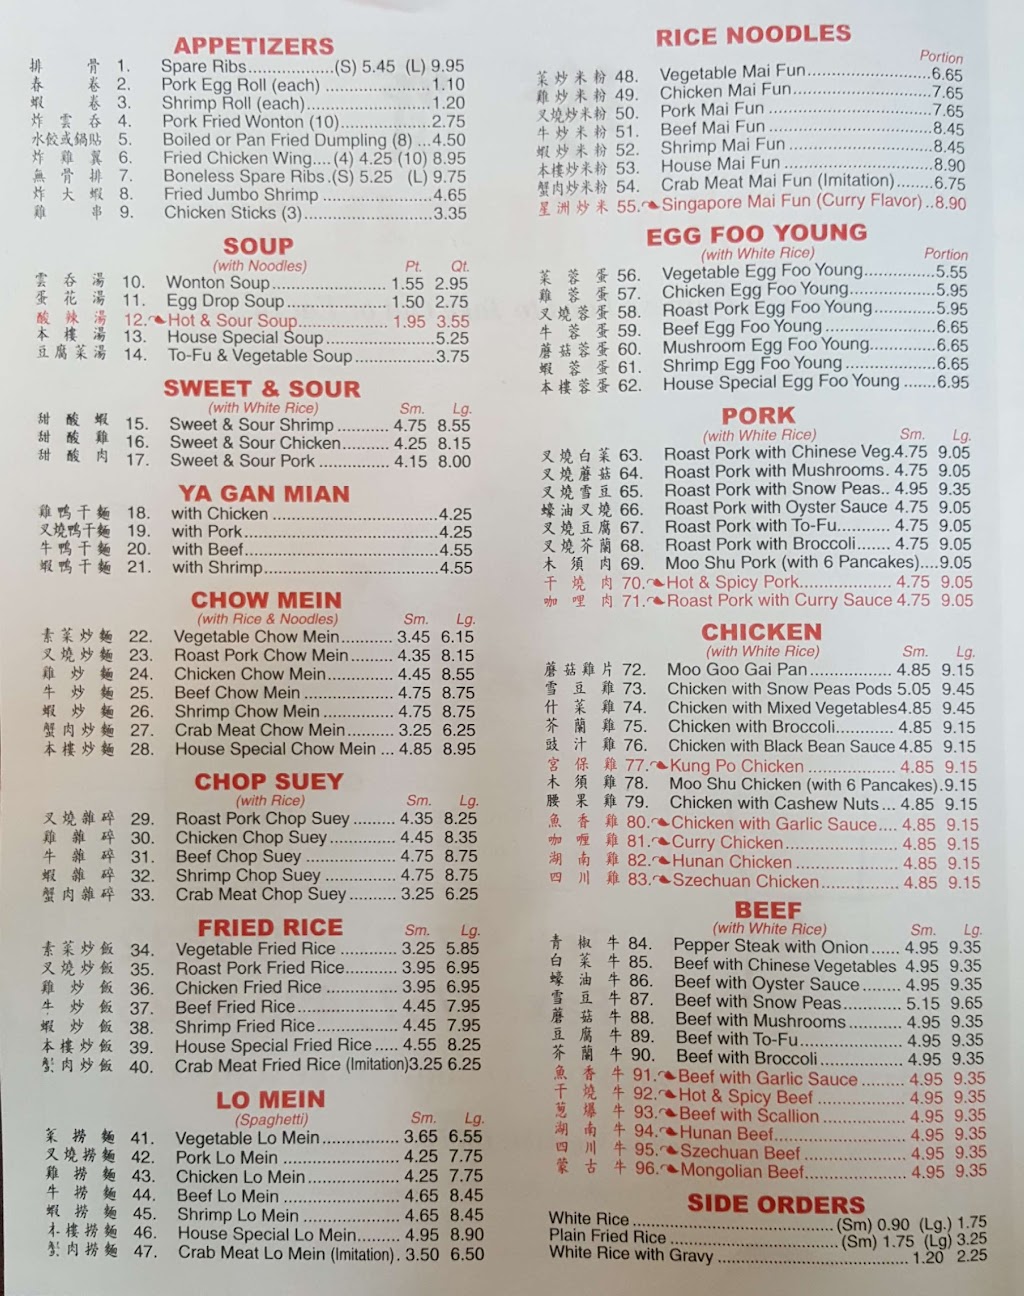 Jumbo Chinese Restaurant | 5277 Princess Anne Rd #317, Virginia Beach, VA 23462, USA | Phone: (757) 499-5632